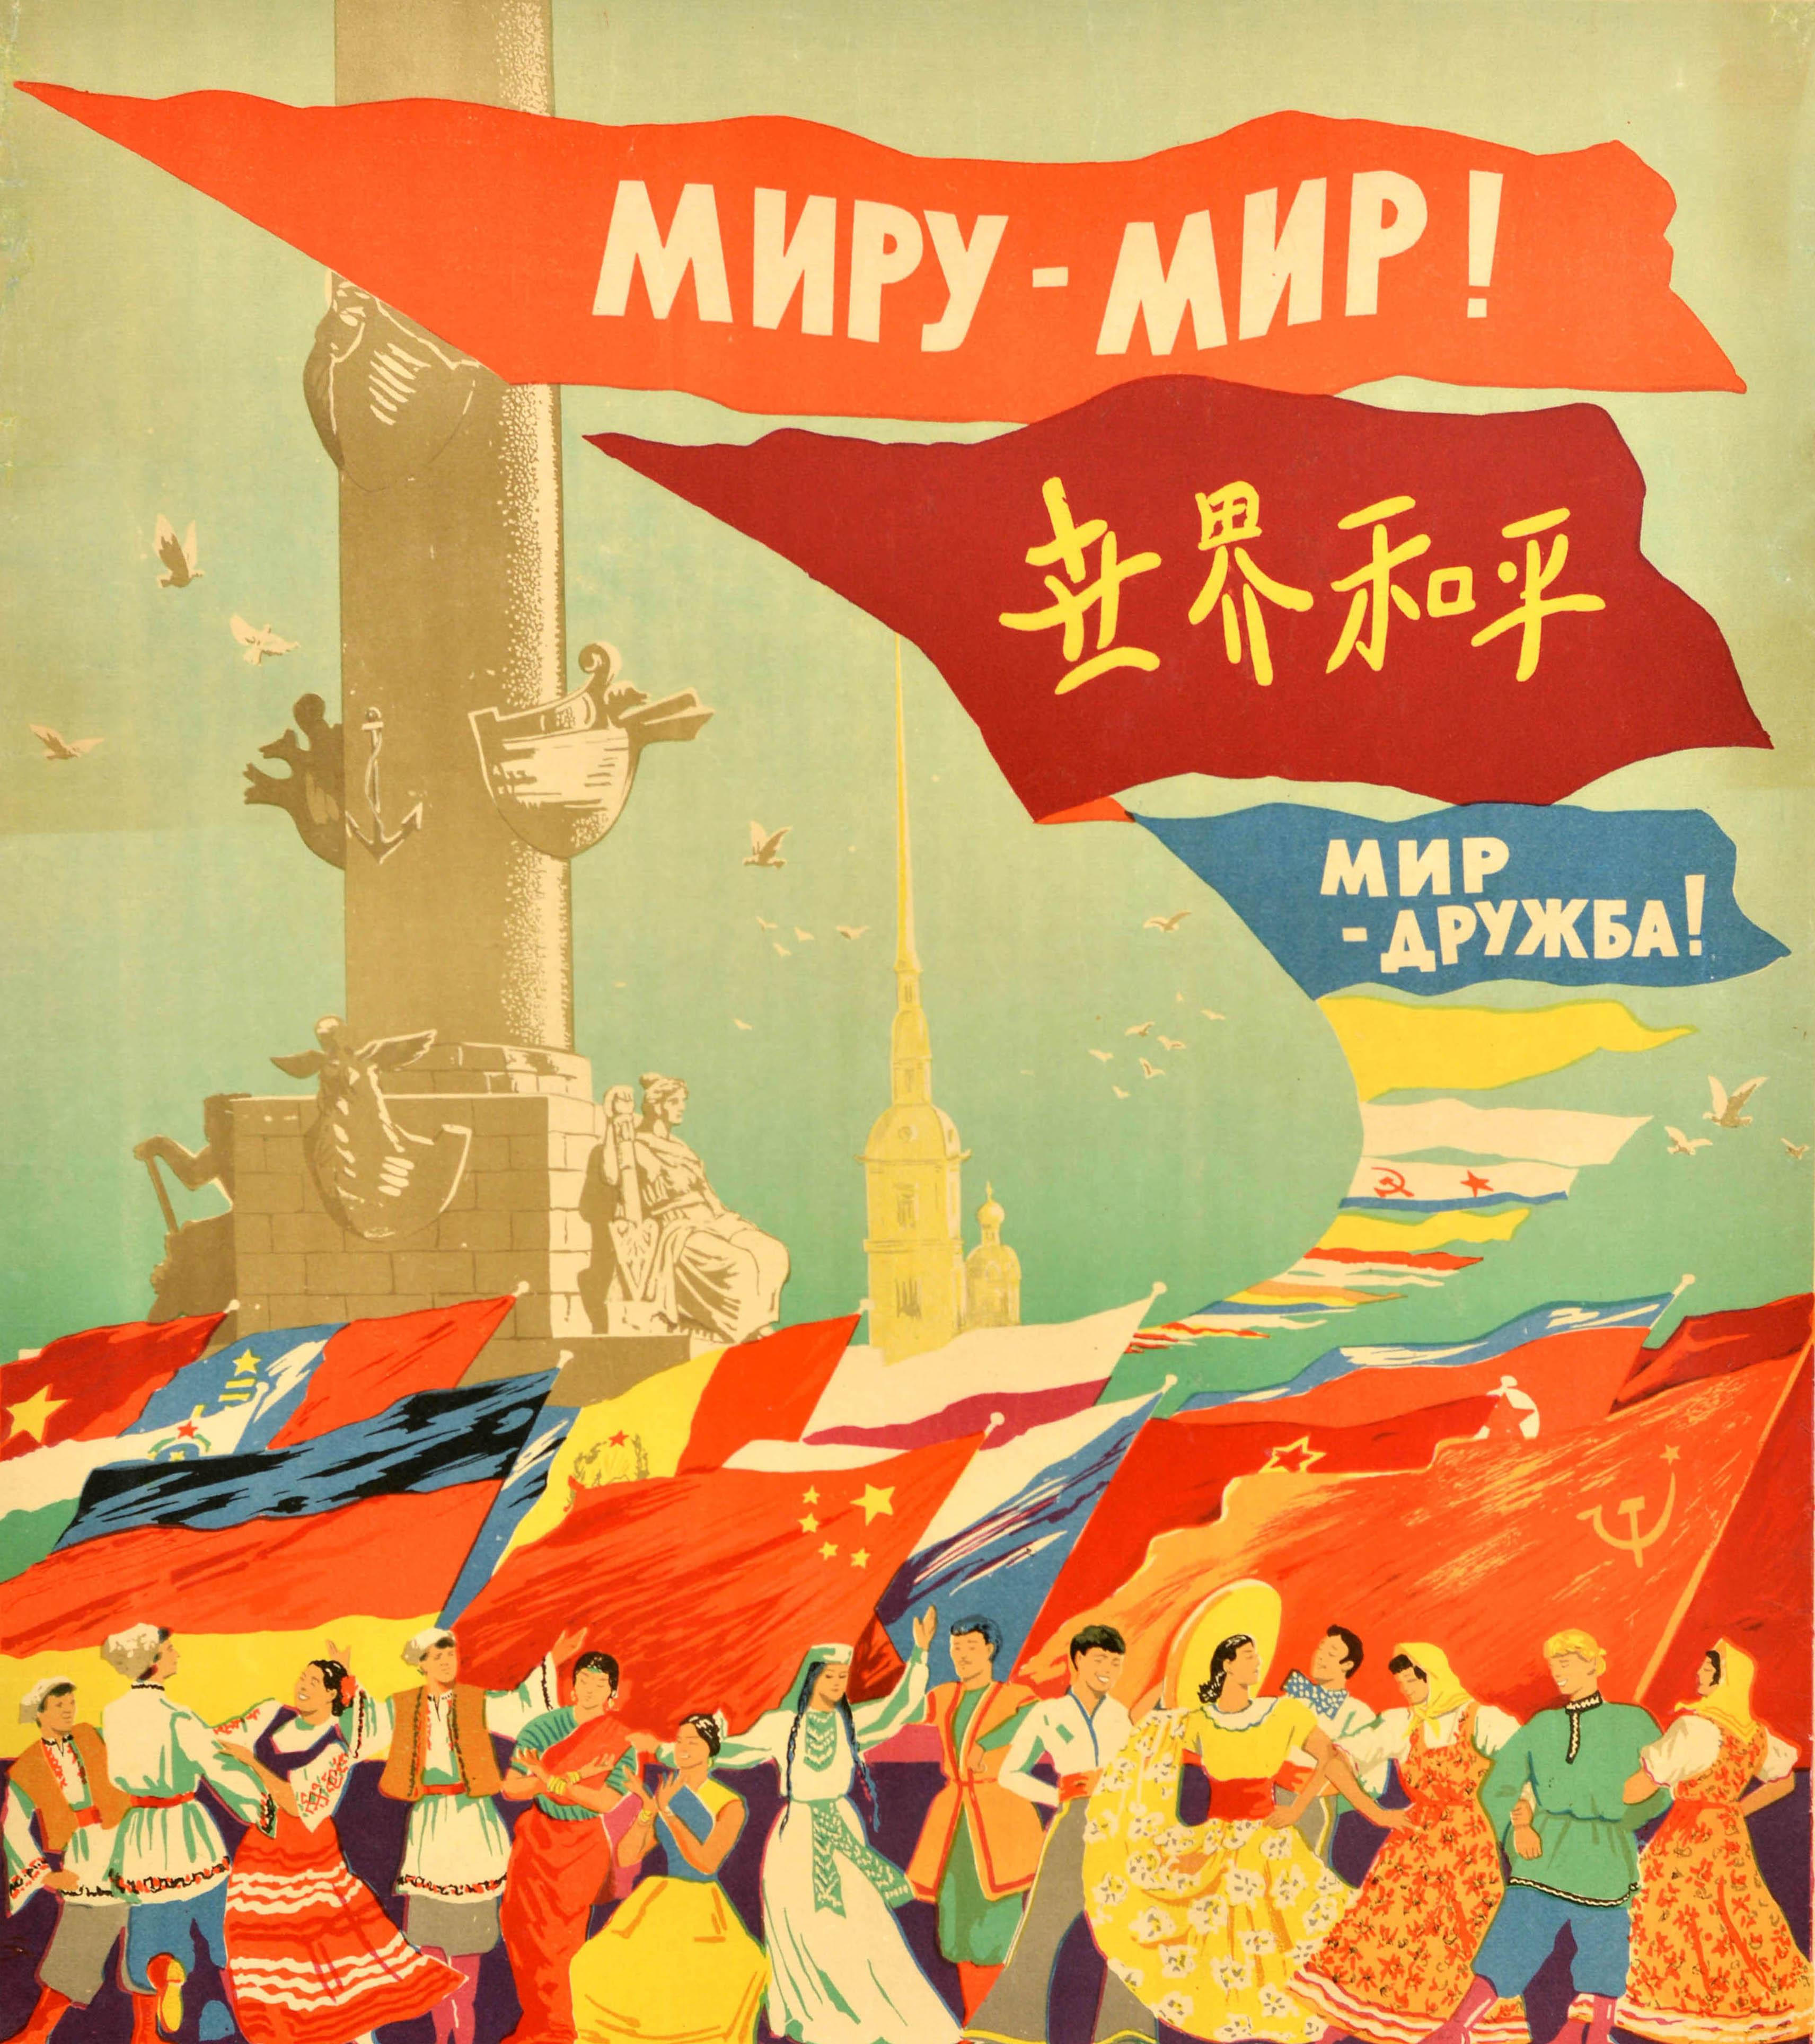 Originales sowjetisches Propagandaplakat für die 6. Weltfestspiele der Jugend und Studenten mit einer farbenfrohen Illustration von Menschen aus verschiedenen Ländern, die in ihren Nationaltrachten gekleidet sind und zusammen unter Fahnen und